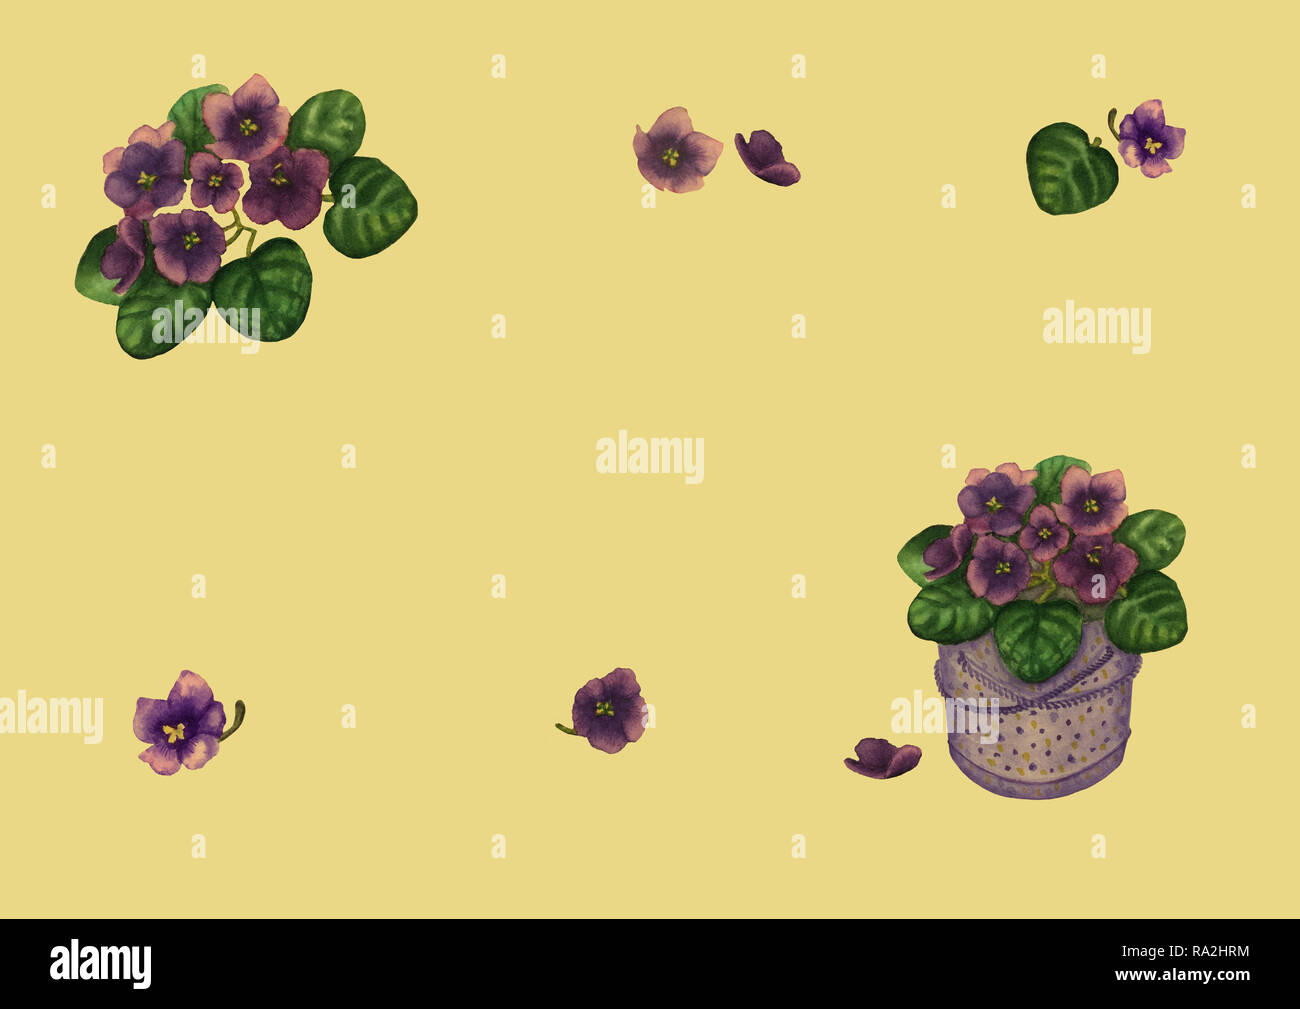 Hand gezeichnet Aquarell frame von Veilchen viola Blumen und Blätter in  Geschenkbeutel eingestellt. Vintage botanischen Abbildung von Lila Viola  Pflanze isoliert auf der y Stockfotografie - Alamy